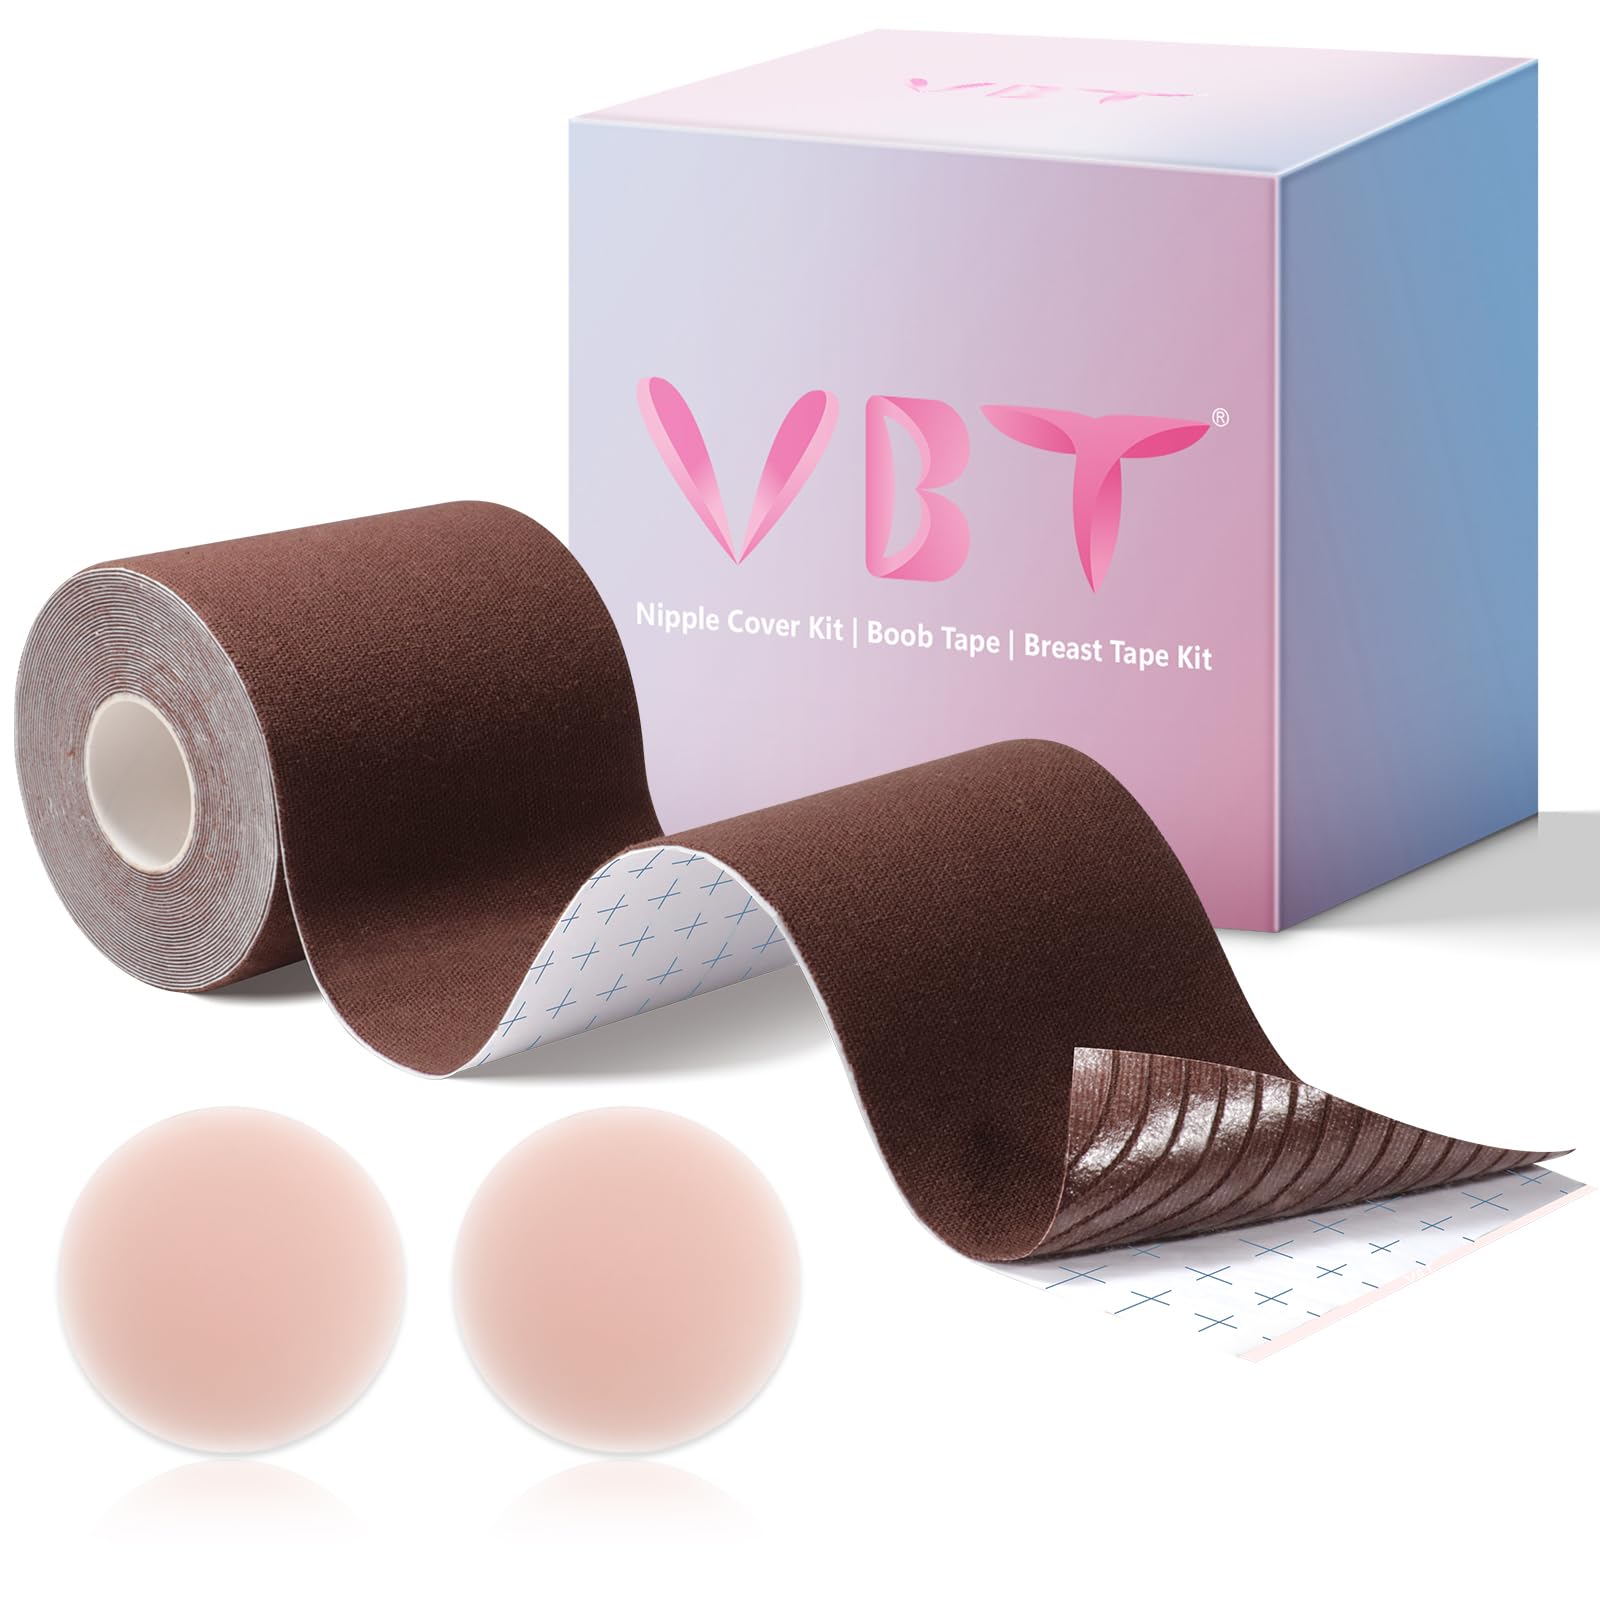 VBT Boob Tape Kit Review 